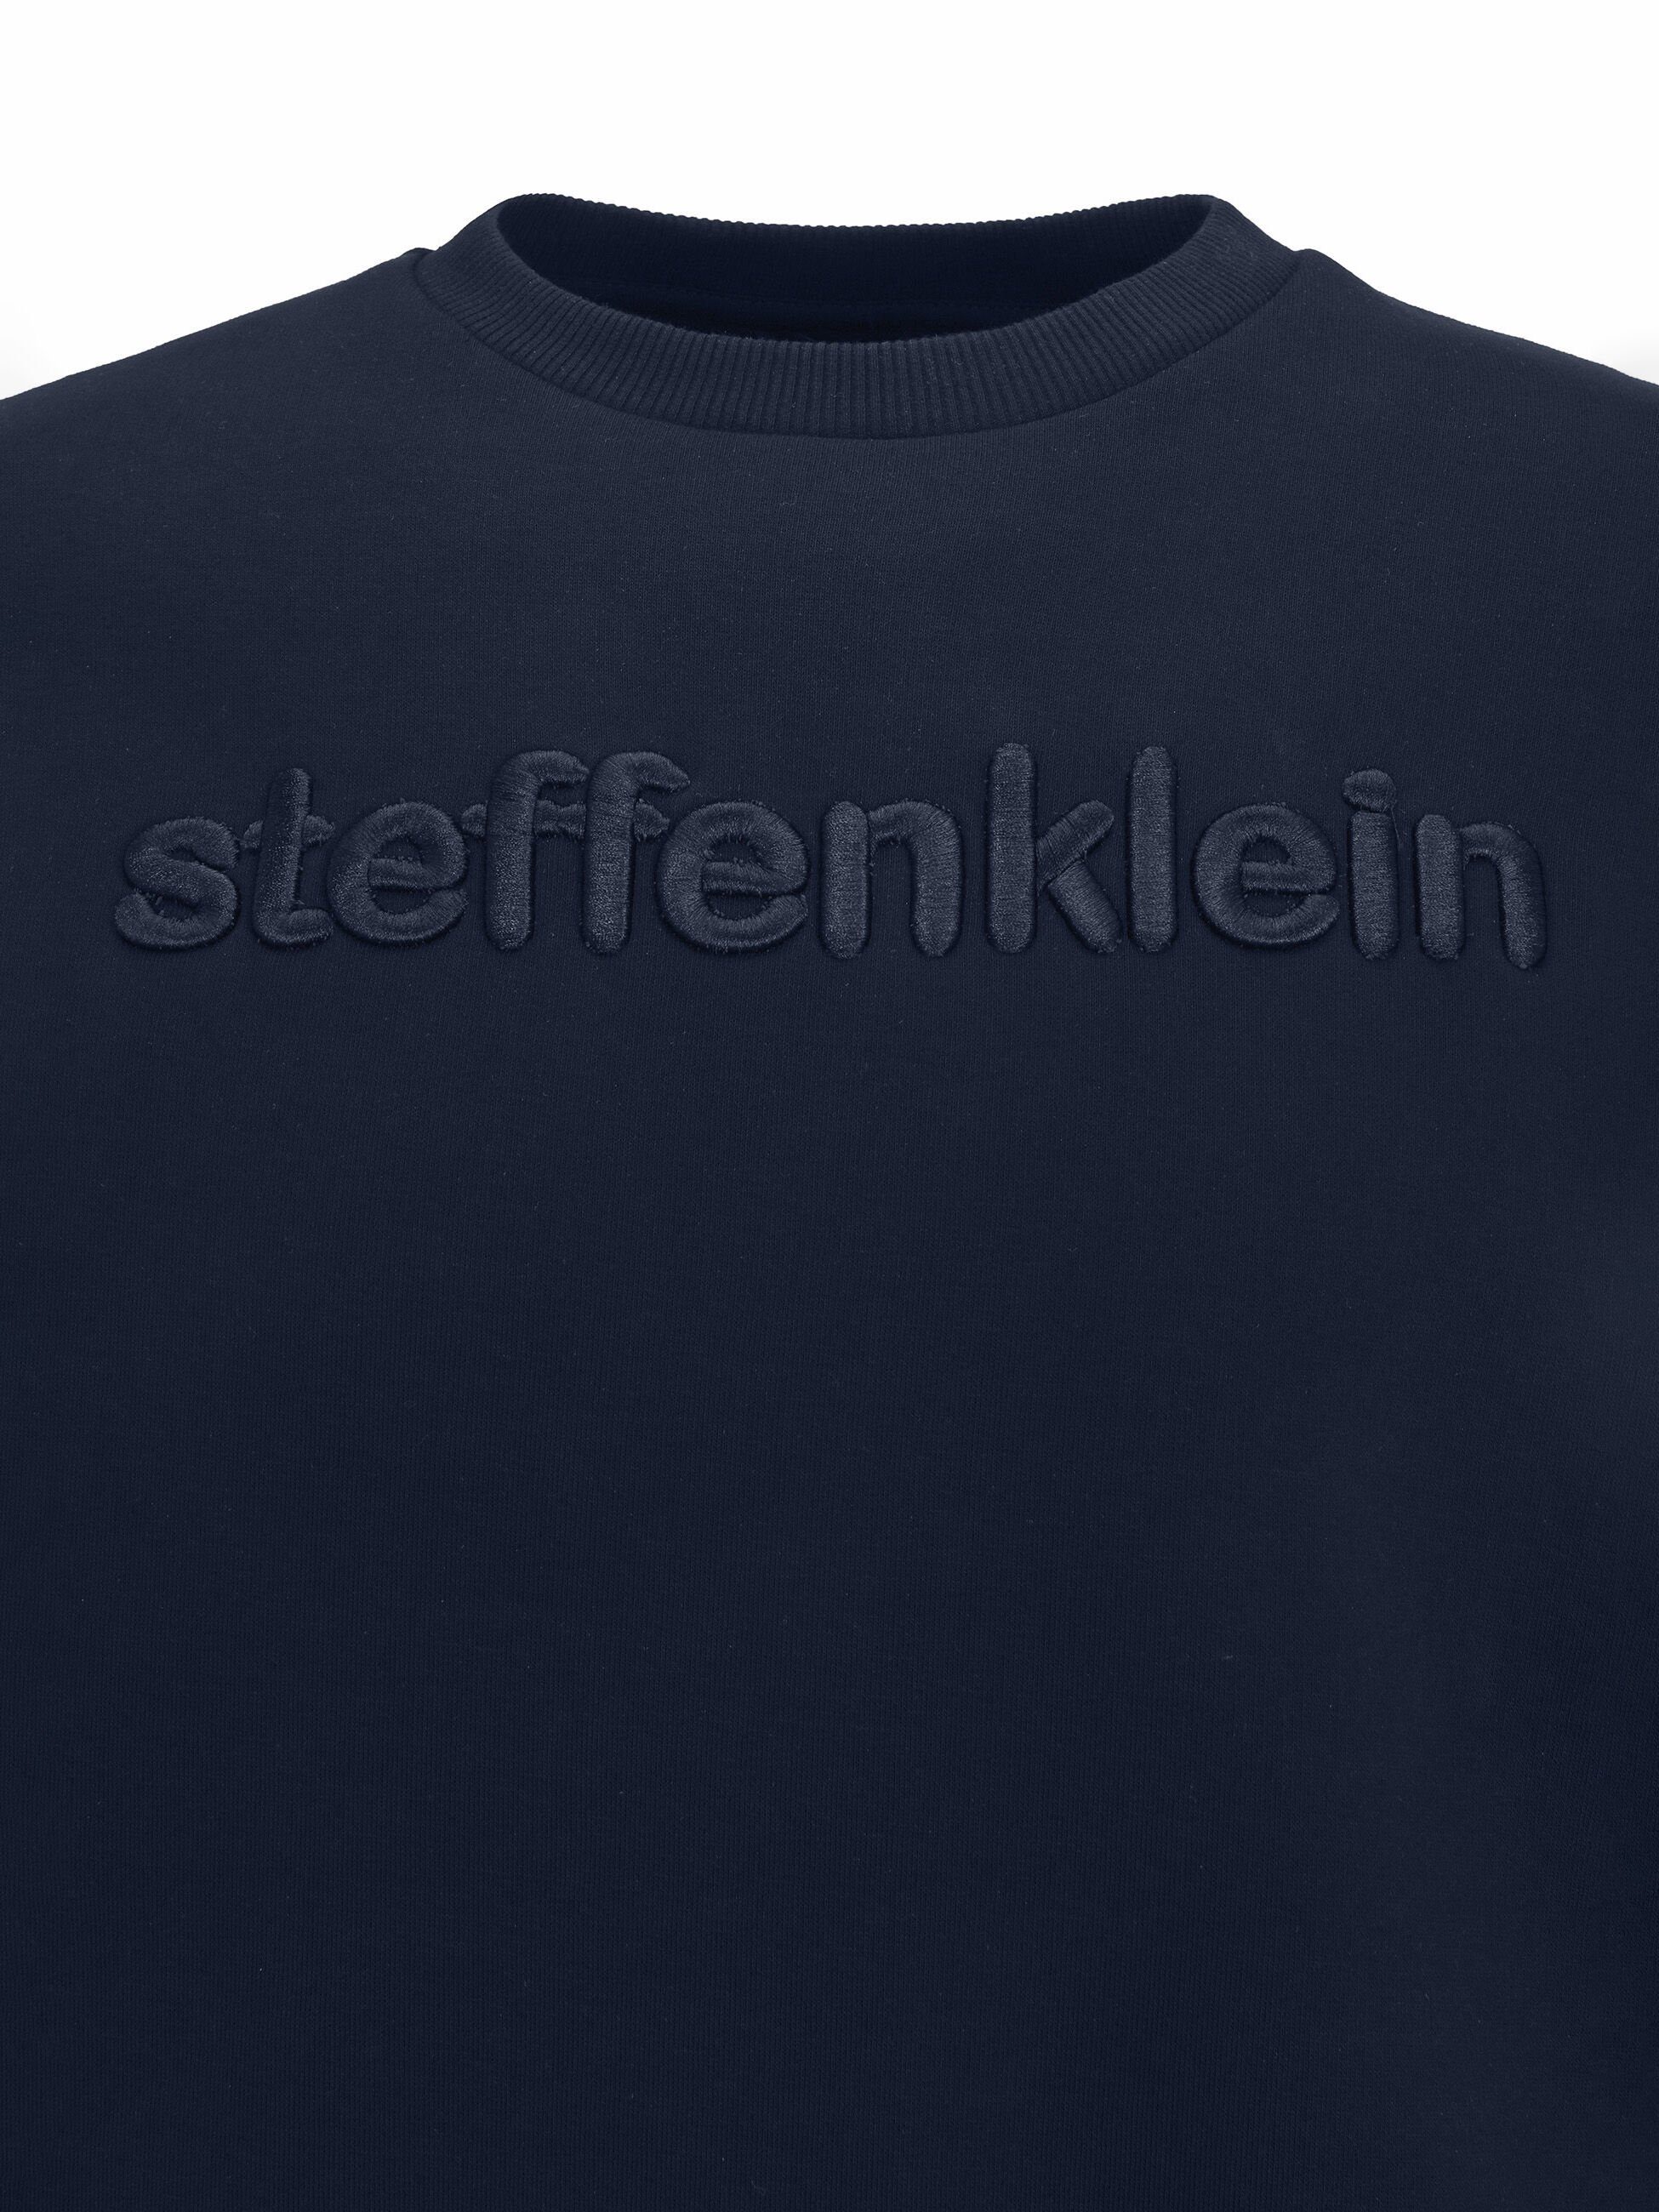 Sweatshirt SteffenKlein